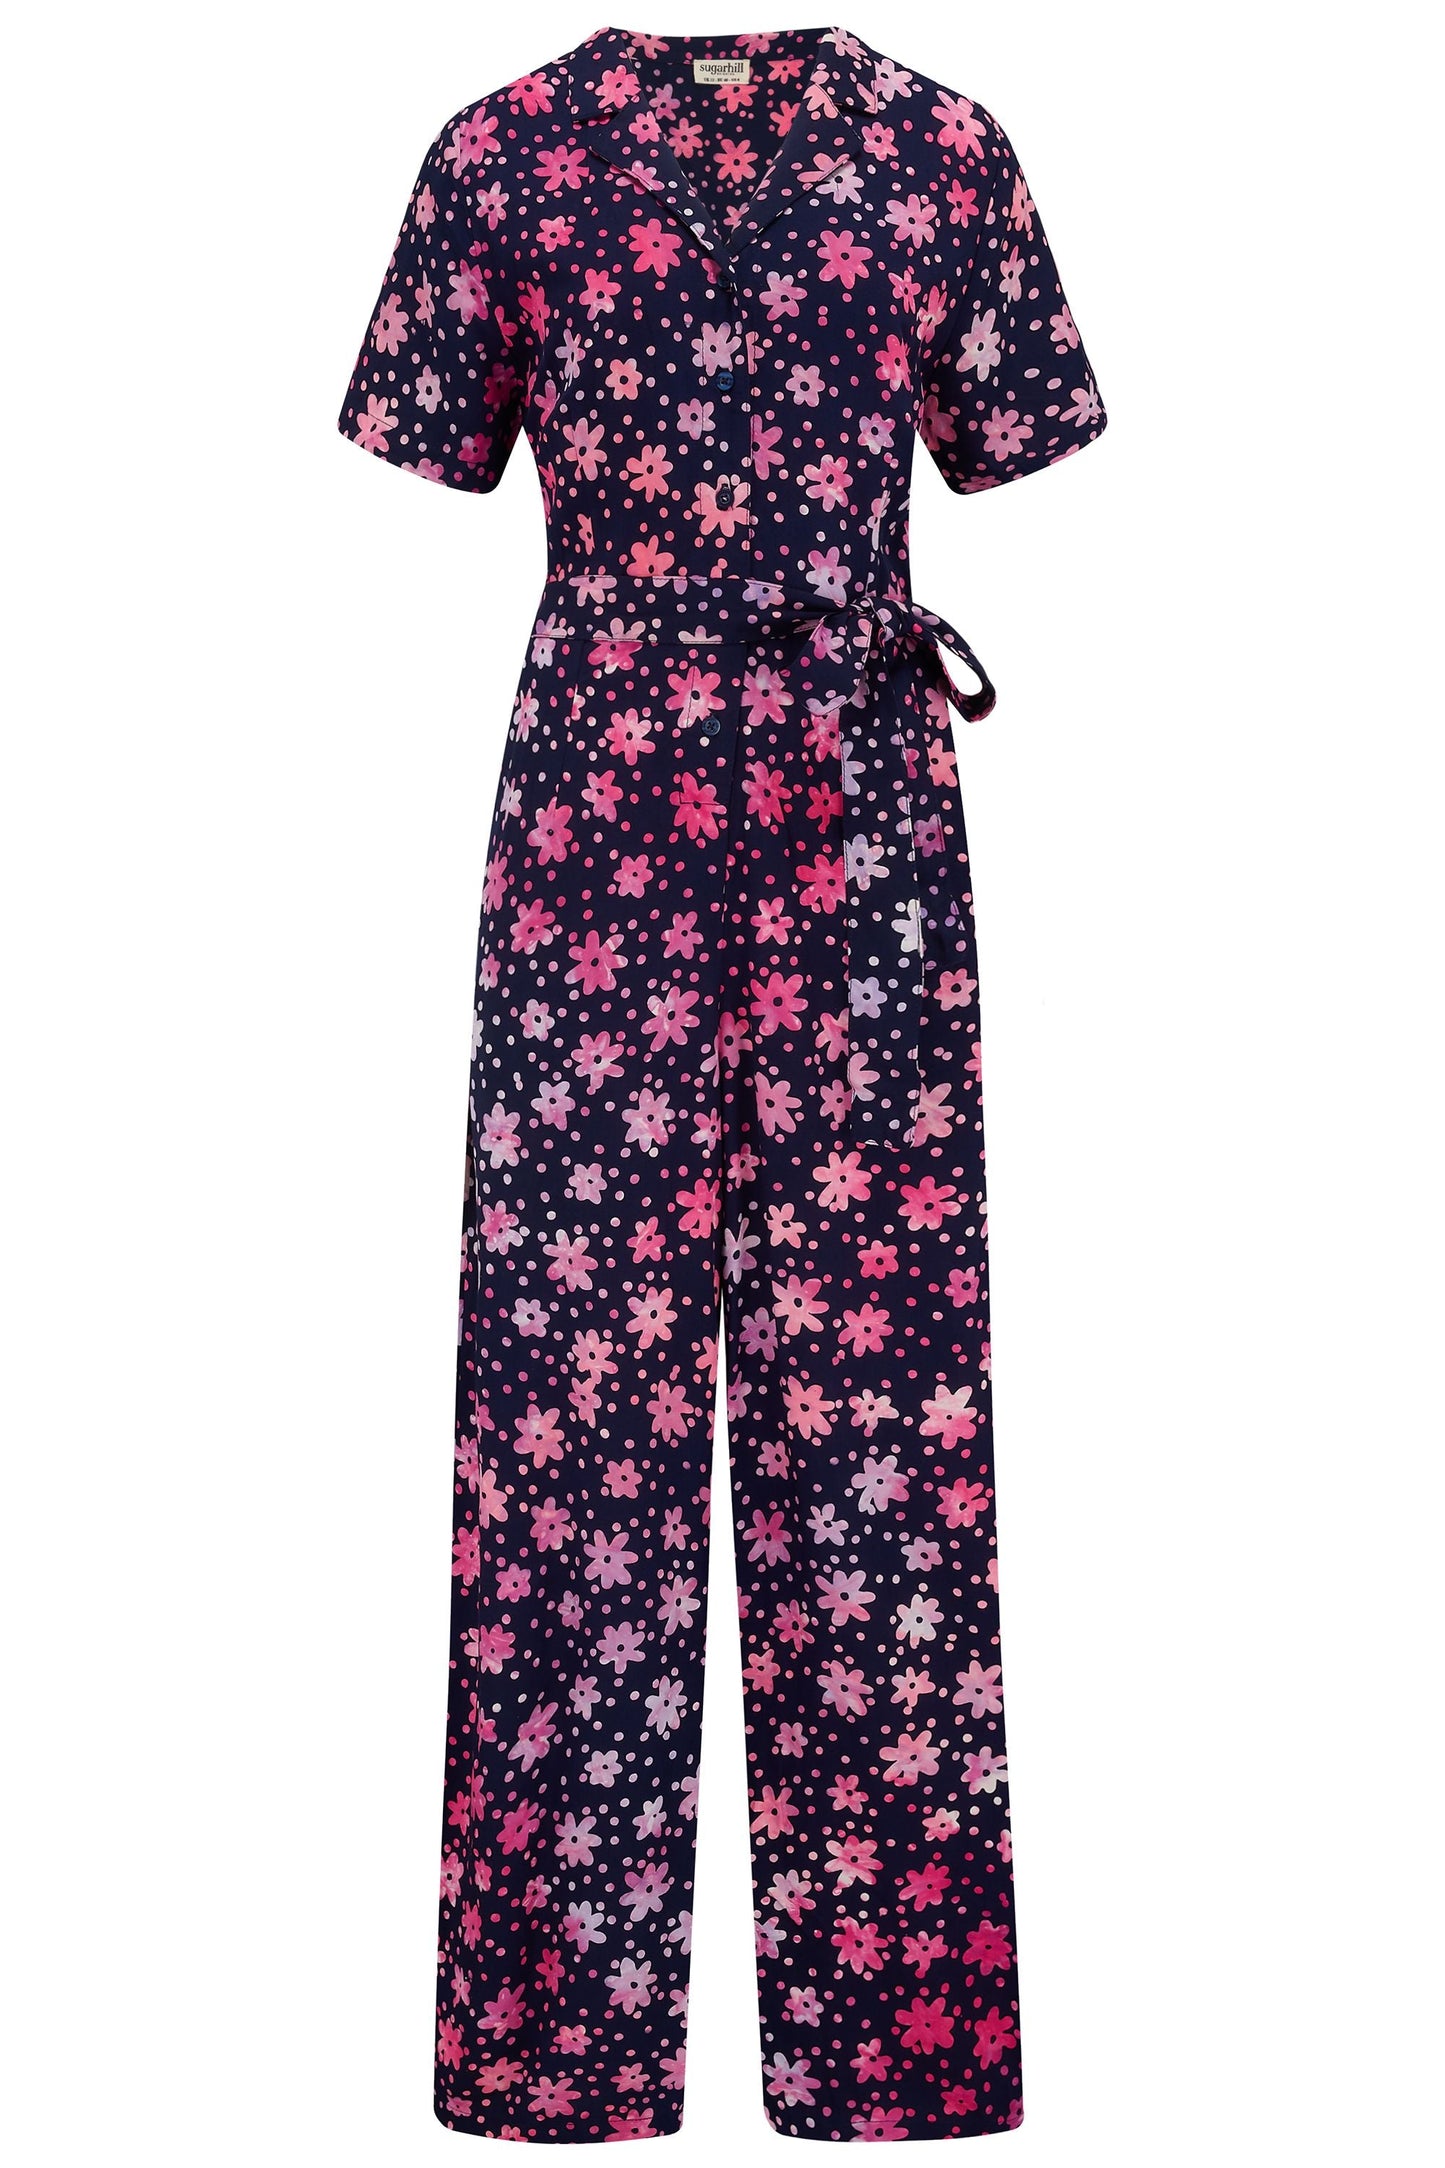 *Odeliah Batik Jumpsuit - Navy/Pink, Flower Power*